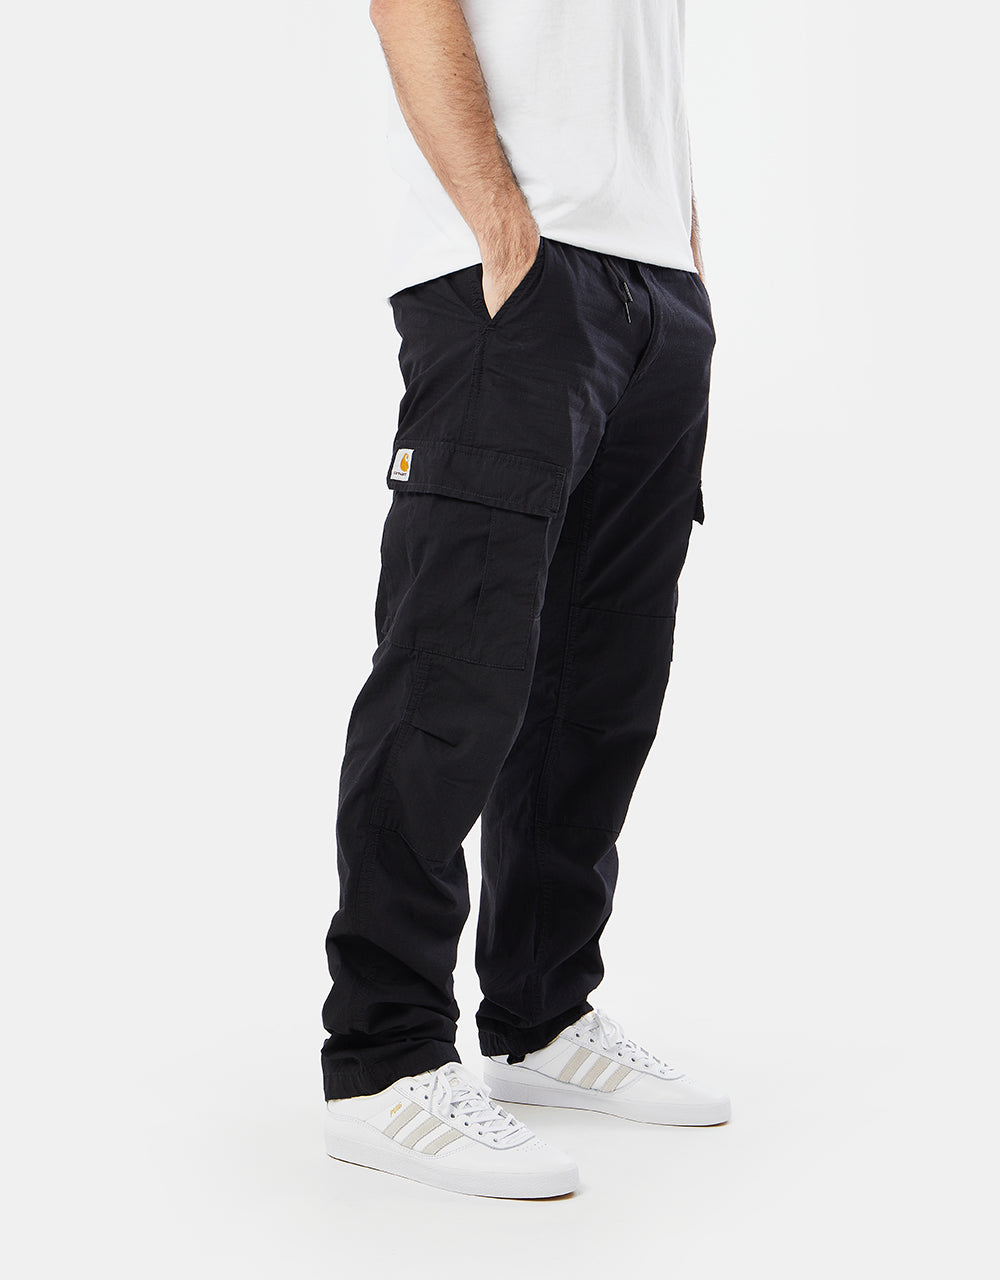 Carhartt WIP Aviation slim fit cargo pants in black rinsed | ASOS | Mens  outfits, Slim fit cargo pants, Black cargo pants